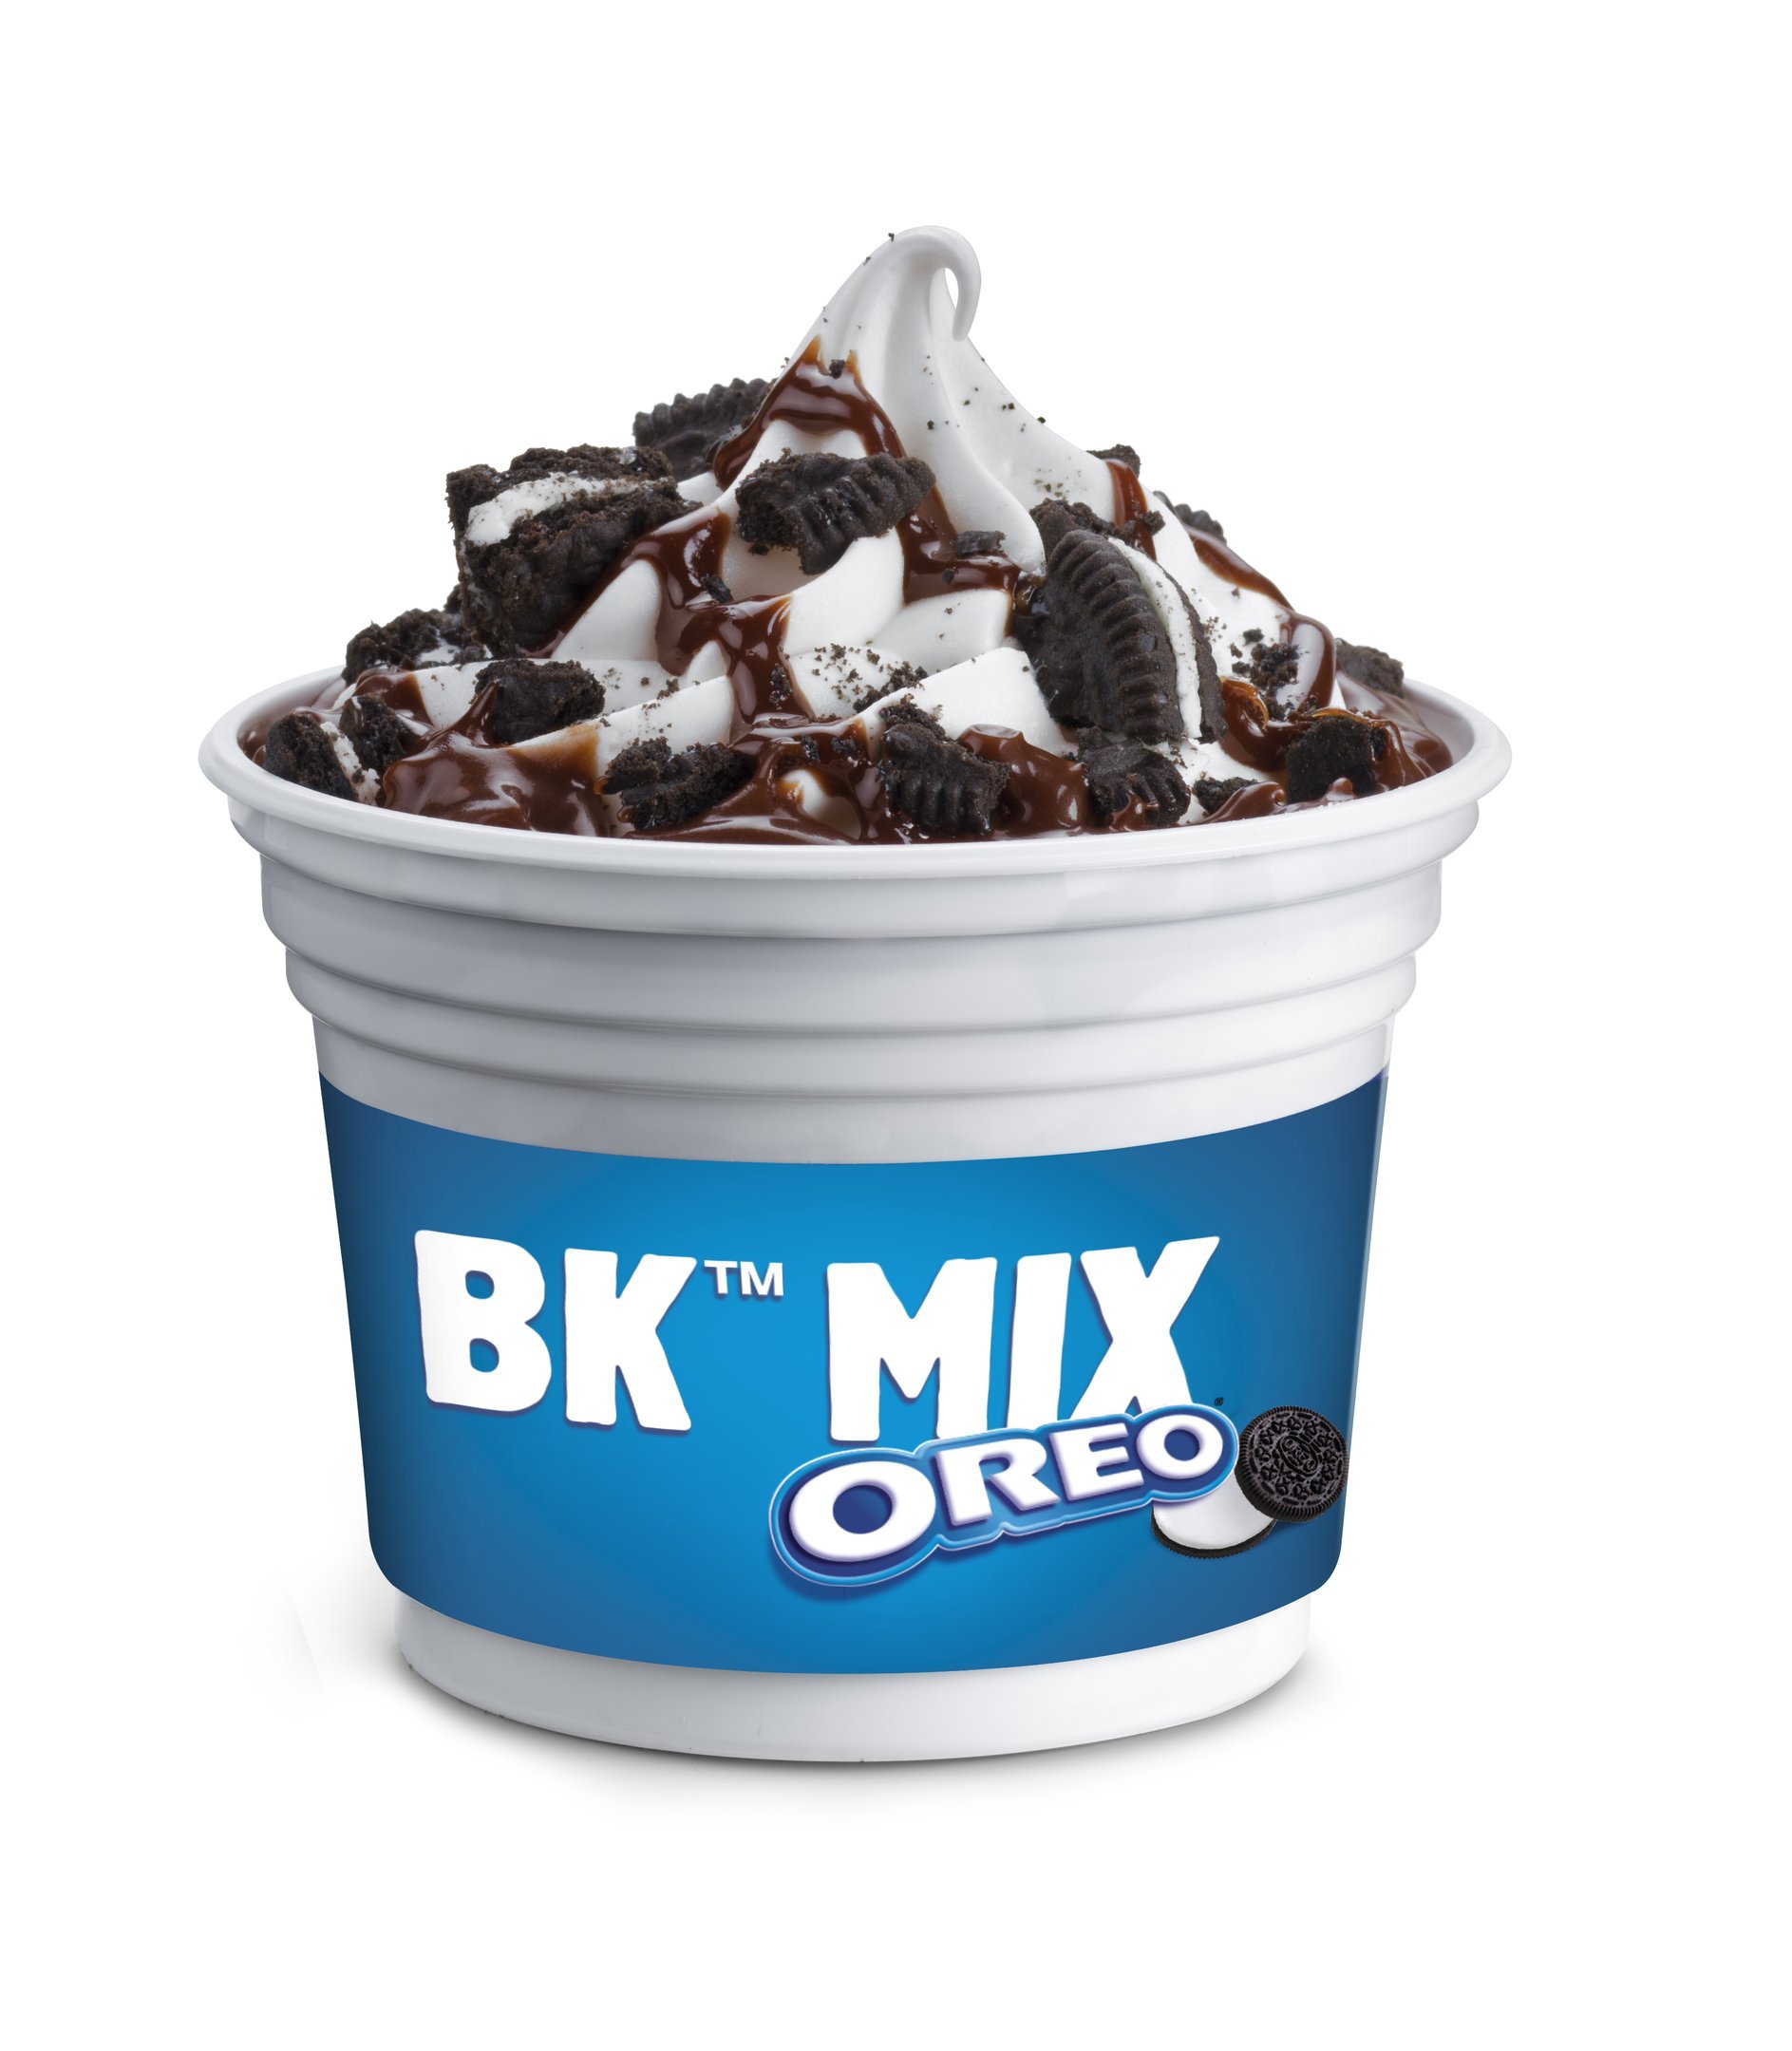 Novo BK Mix: sorvete com pedaços de Oreo